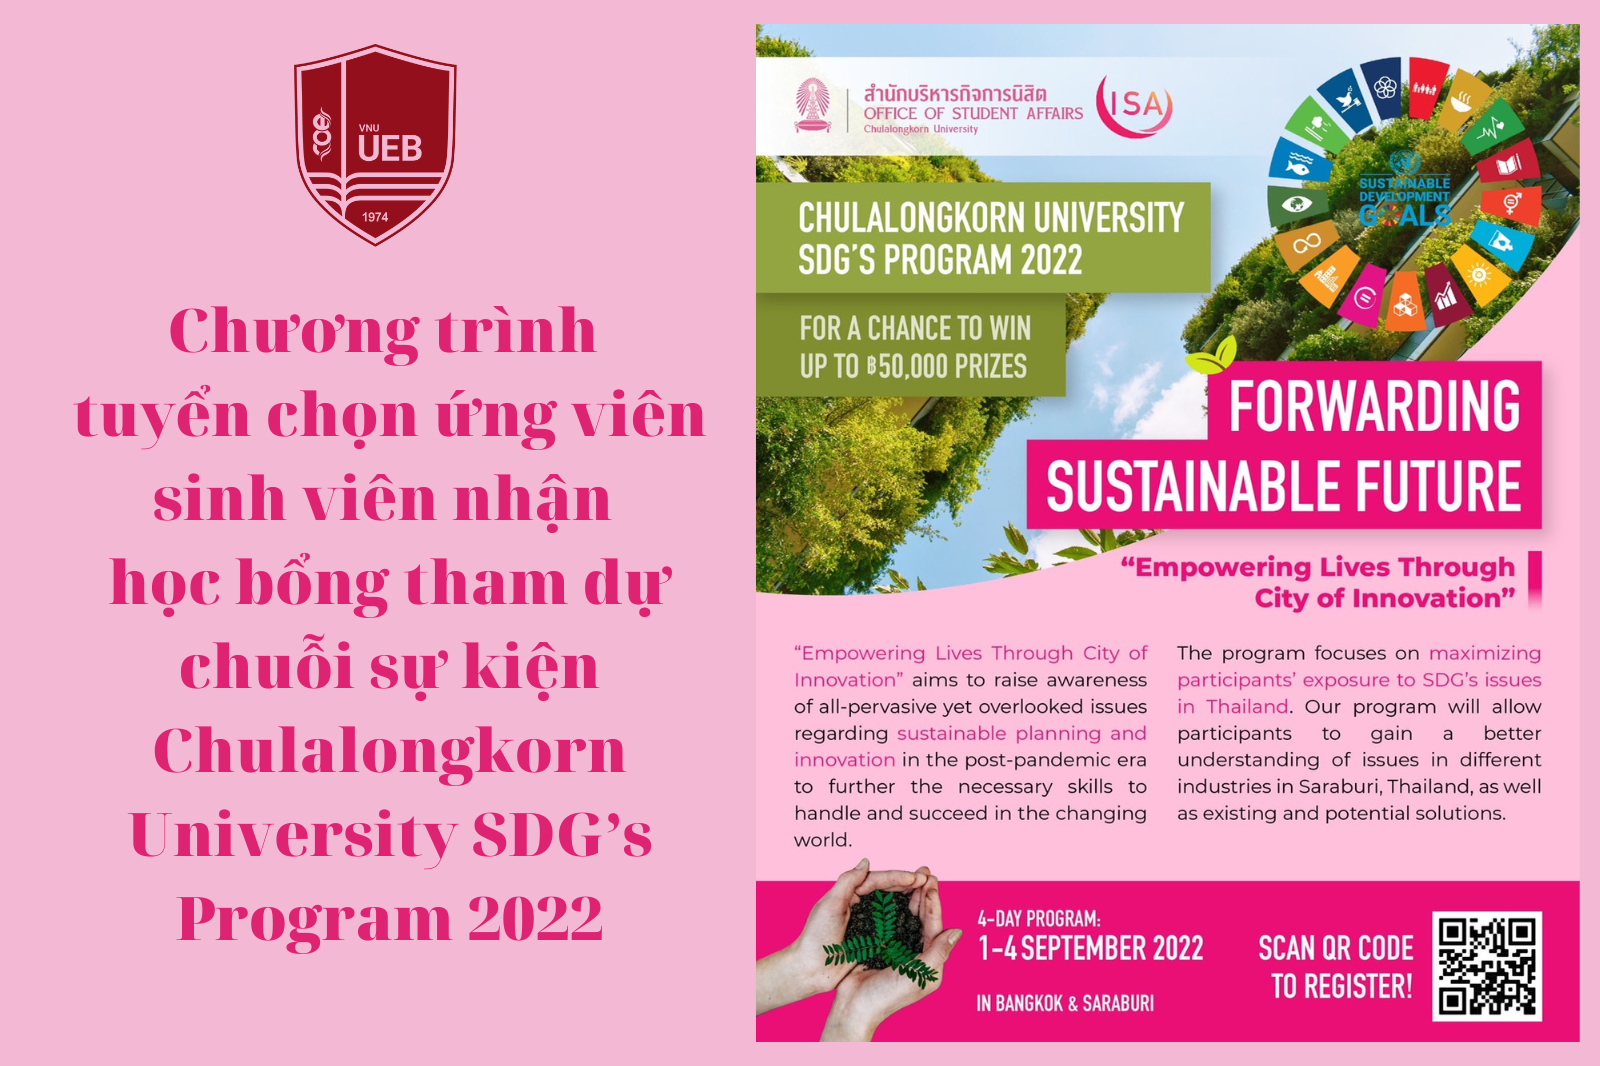 Chương trình tuyển chọn ứng viên sinh viên nhận học bổng tham dự chuỗi sự kiện Chulalongkorn University SDG’s Program 2022